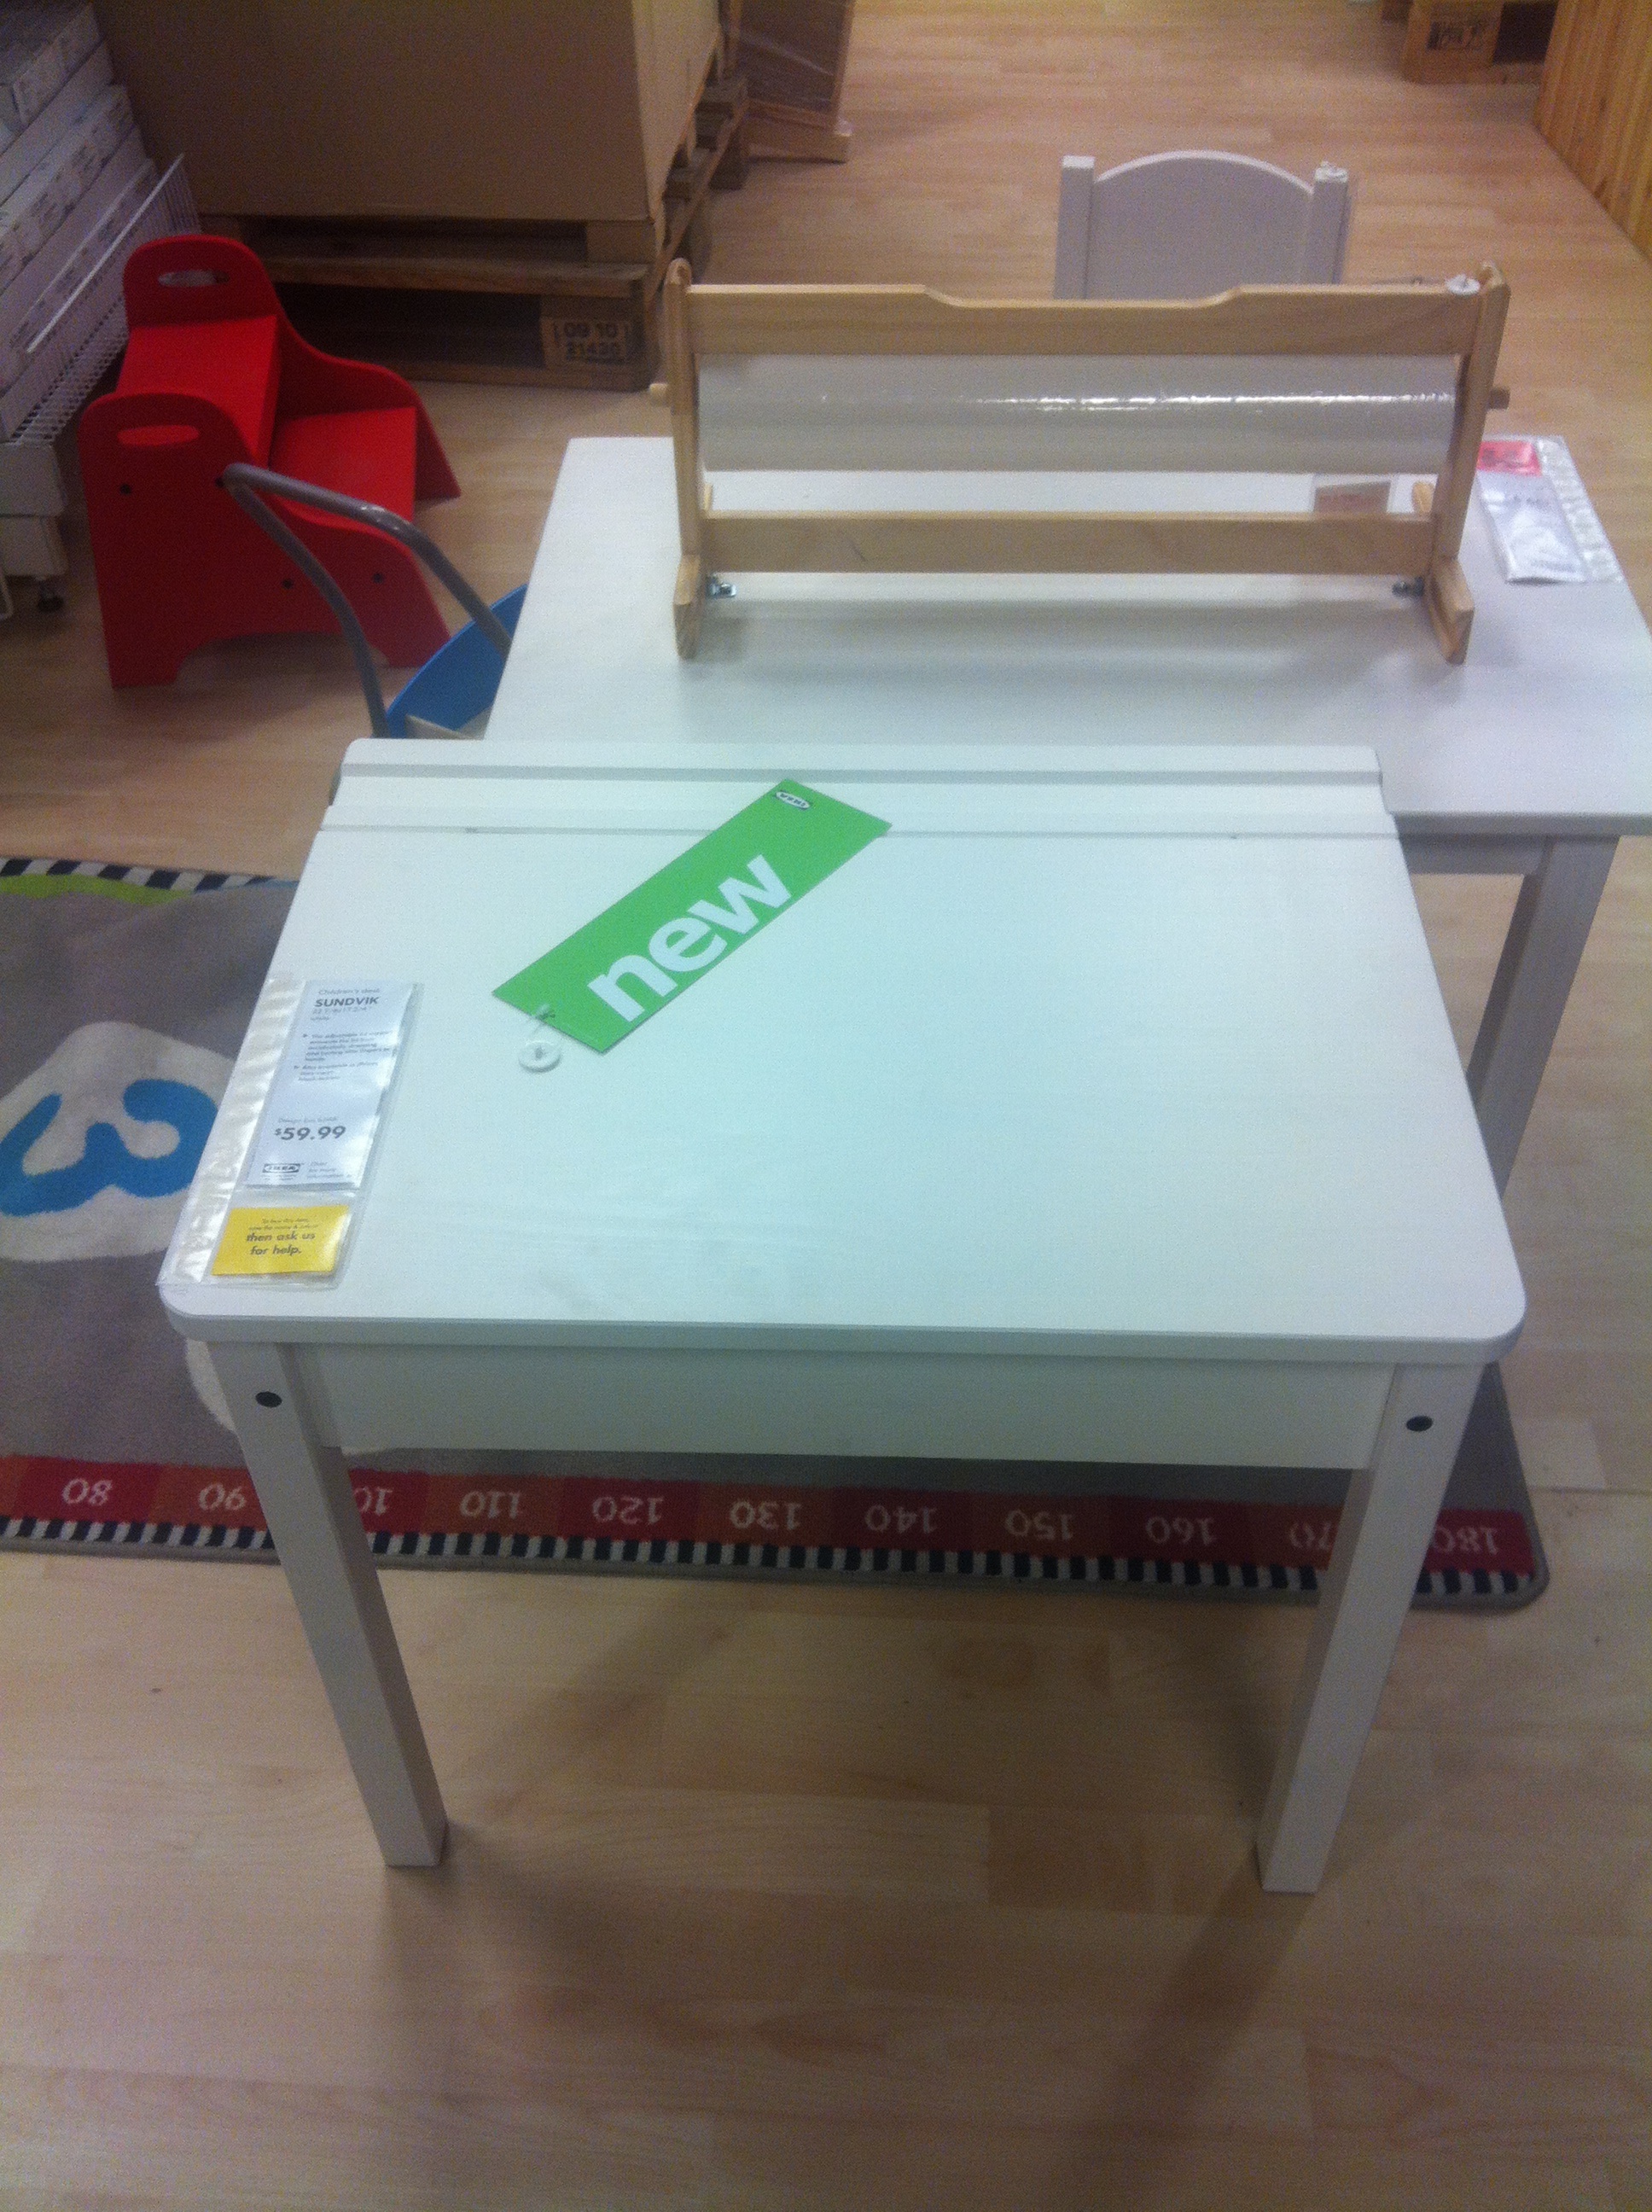 Desk lid down-Ikea